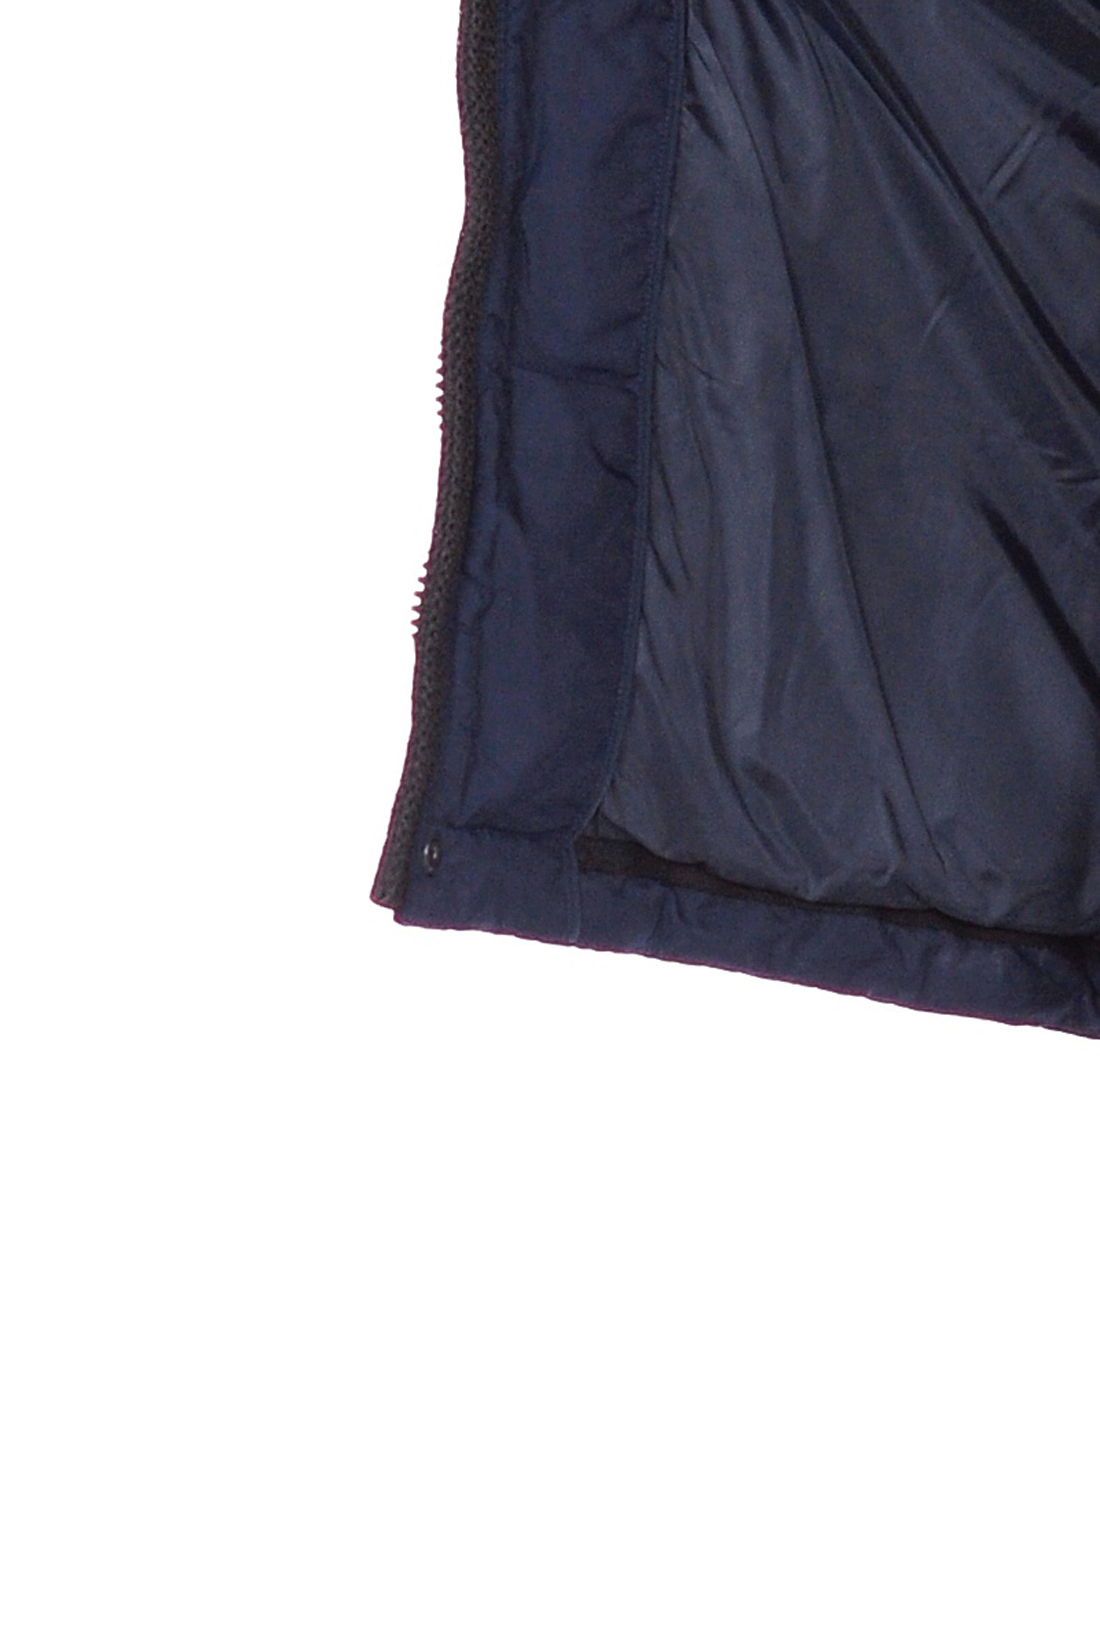 Синий пуховик из комбинированного материала (арт. baon B508540), размер S, цвет deep navy#2c333e Синий пуховик из комбинированного материала (арт. baon B508540) - фото 4